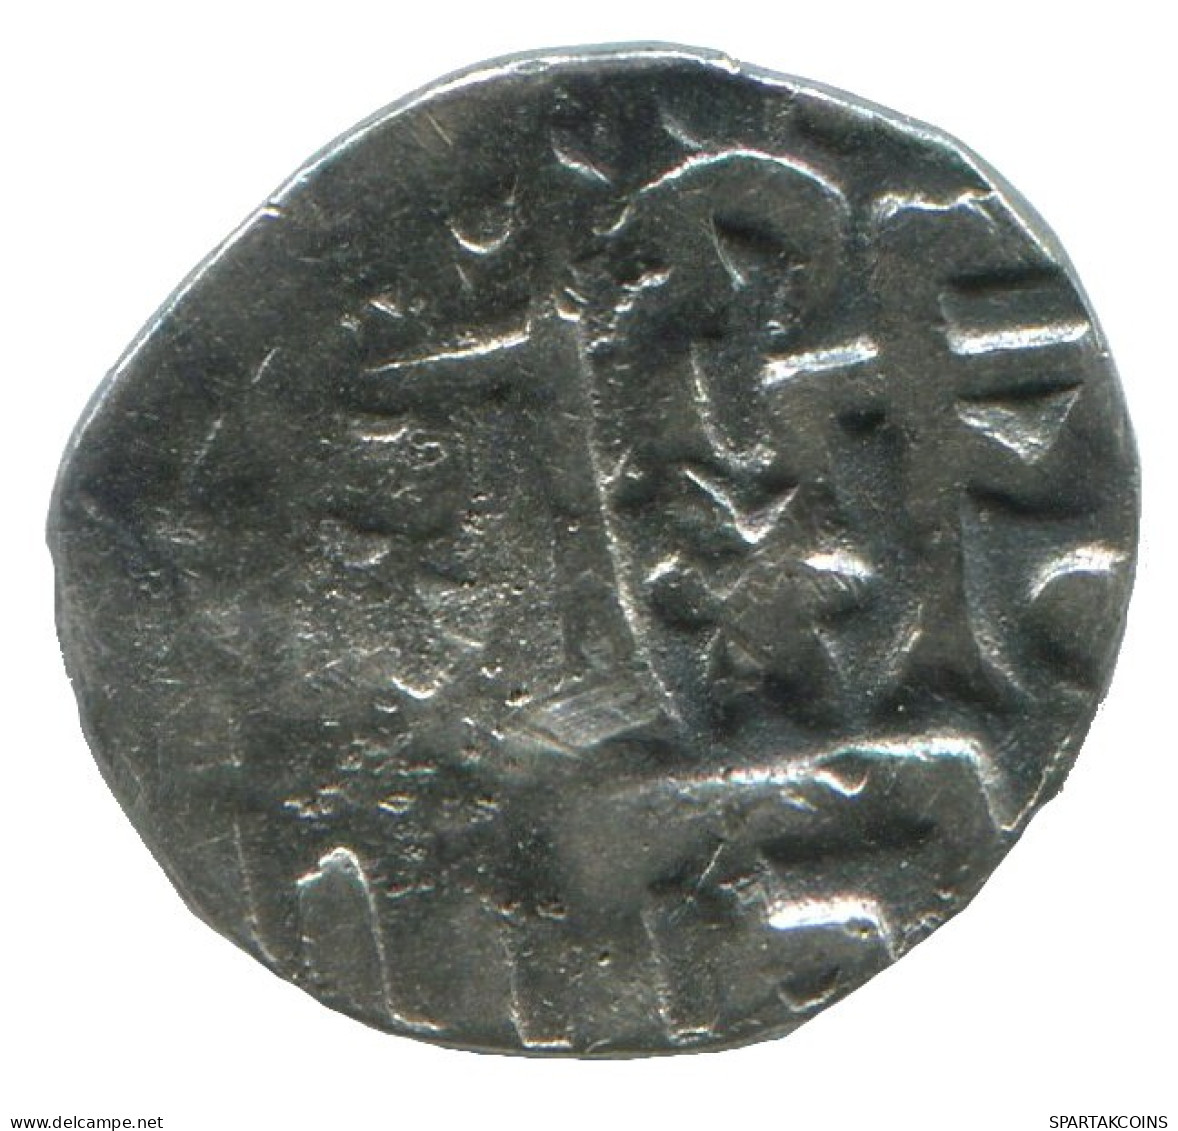 GOLDEN HORDE Silver Dirham Medieval Islamic Coin 0.9g/13mm #NNN2032.8.E.A - Islamitisch